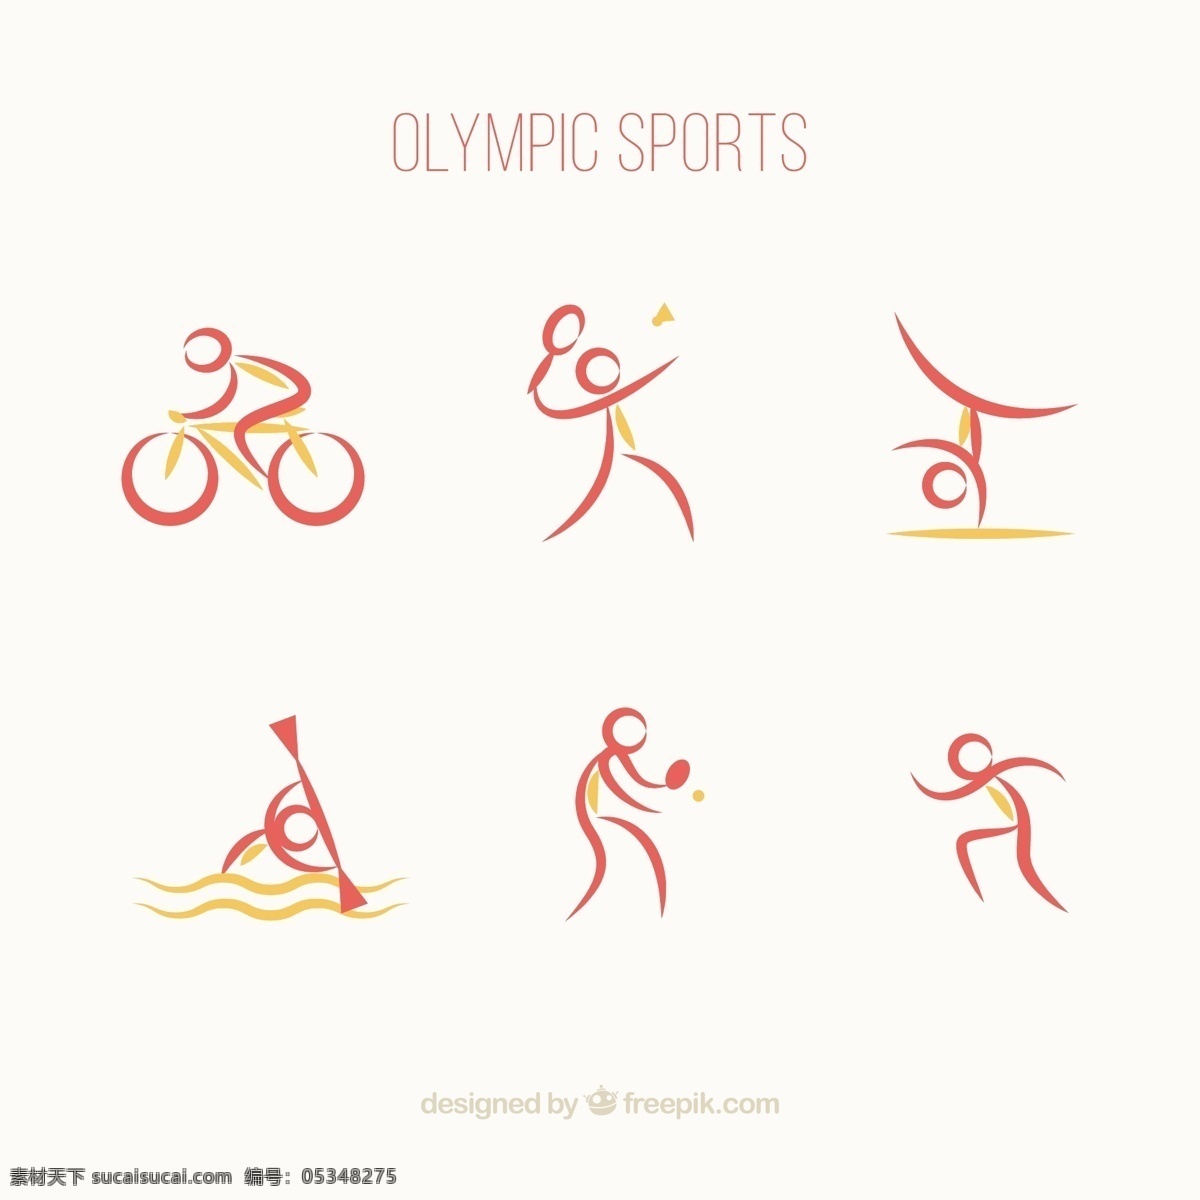 抽象 风格 奥运 体育 收藏 摘要 健身 偶像 健康 2016 现代 运动 跑步 训练 游泳 运动会 巴西 自行车 比赛 生活方式